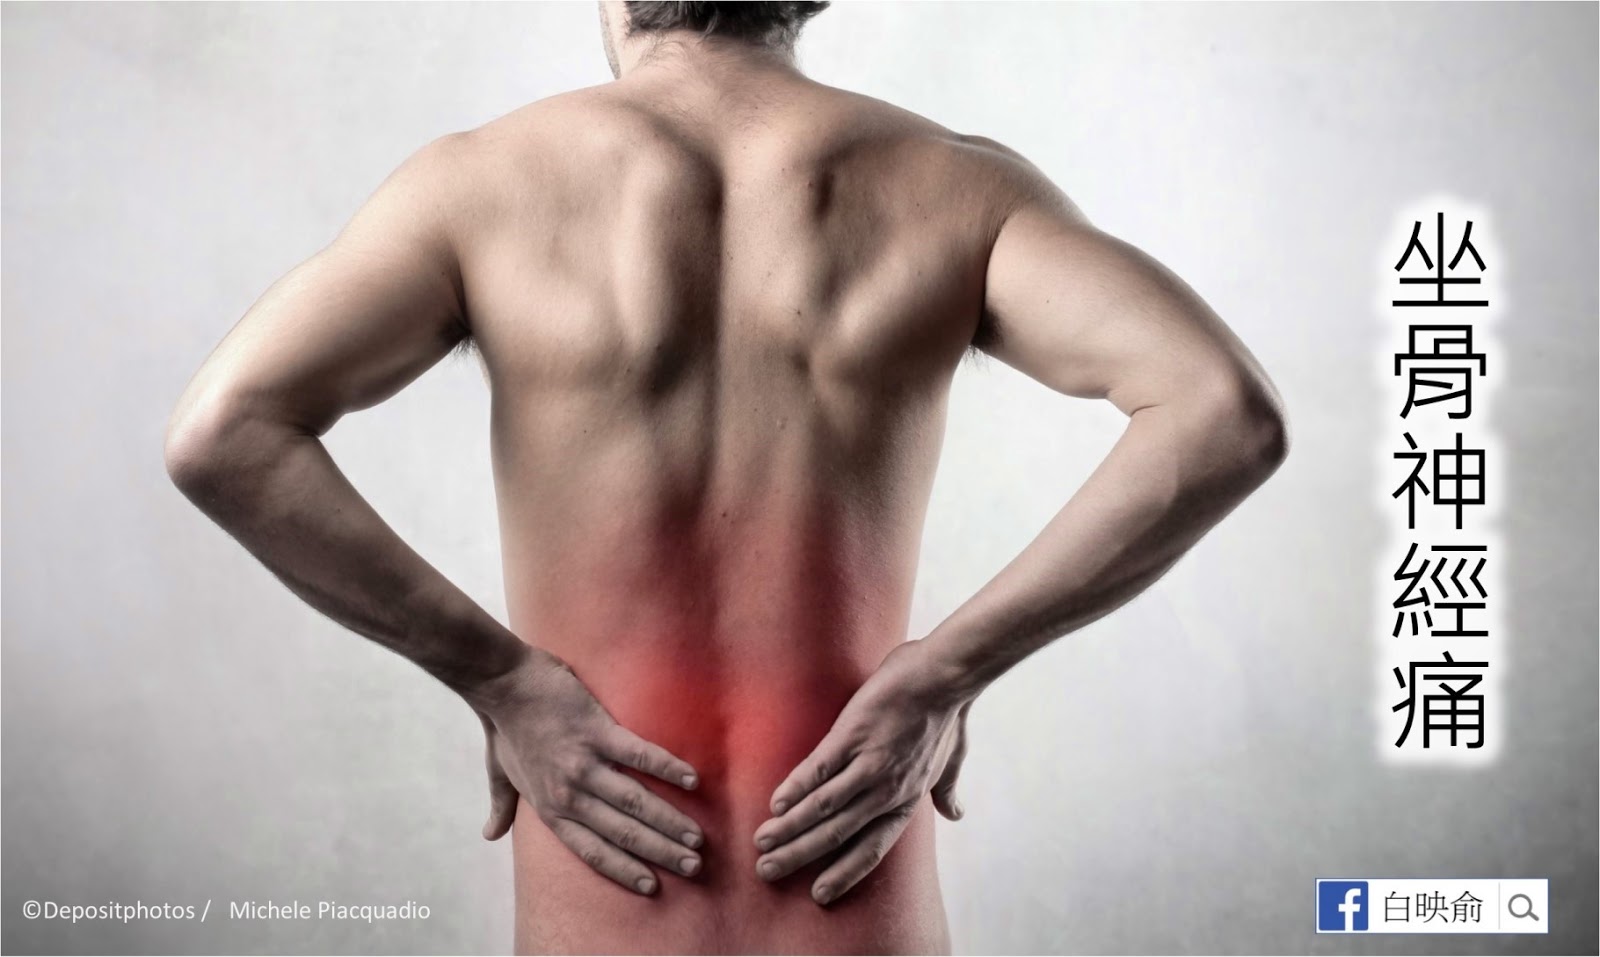 Невозможные боли в пояснице. Поясница. Воспалительная боль в спине. Спина человека. Картинка спины человека.